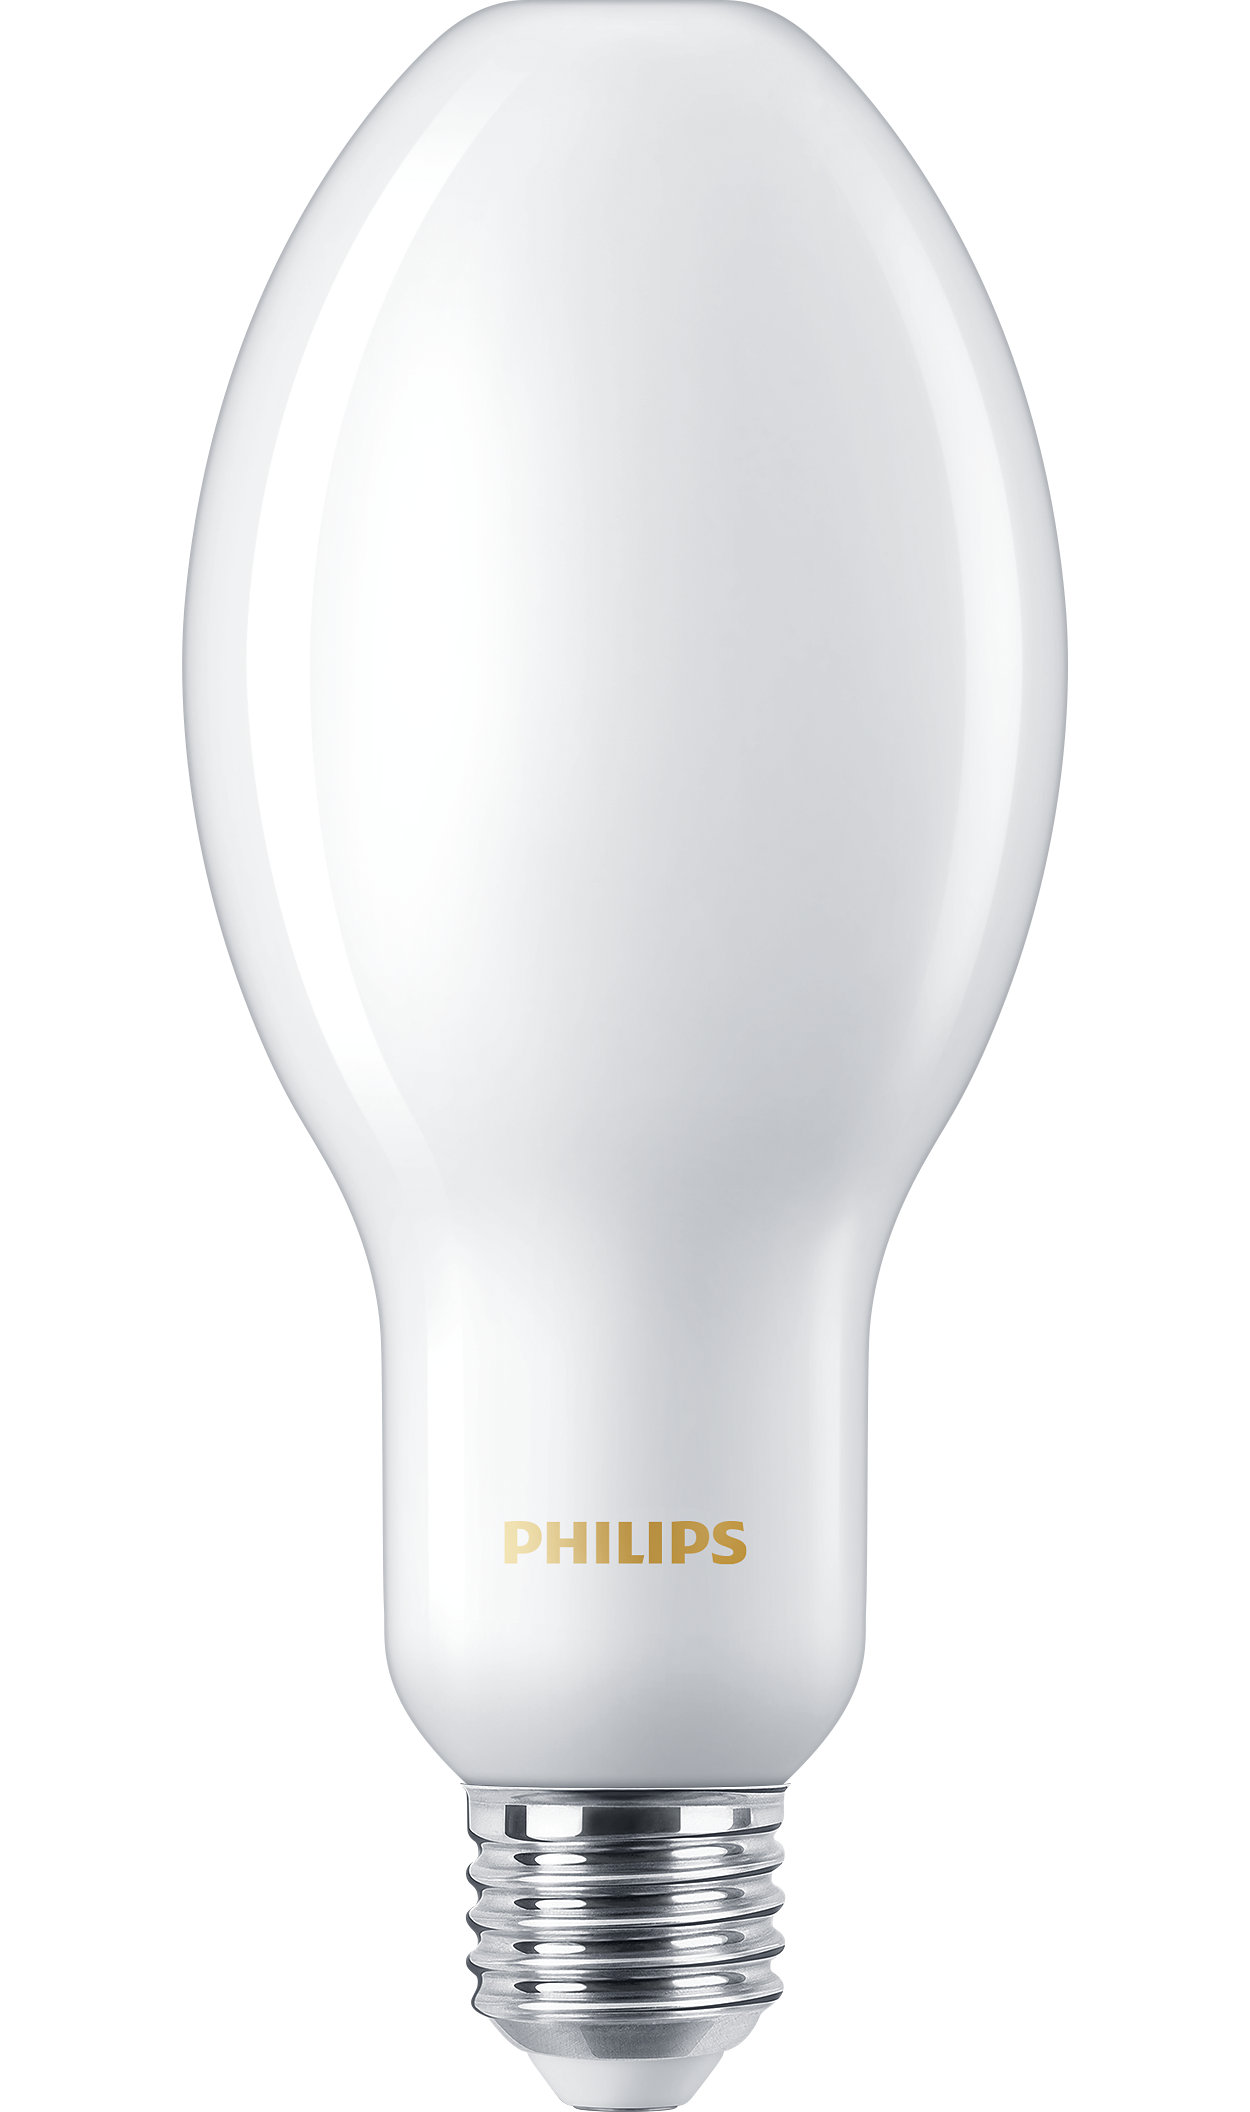 全新 LED HPL 解决方案，用于替换 HID 灯具，满足您的日常照明需求